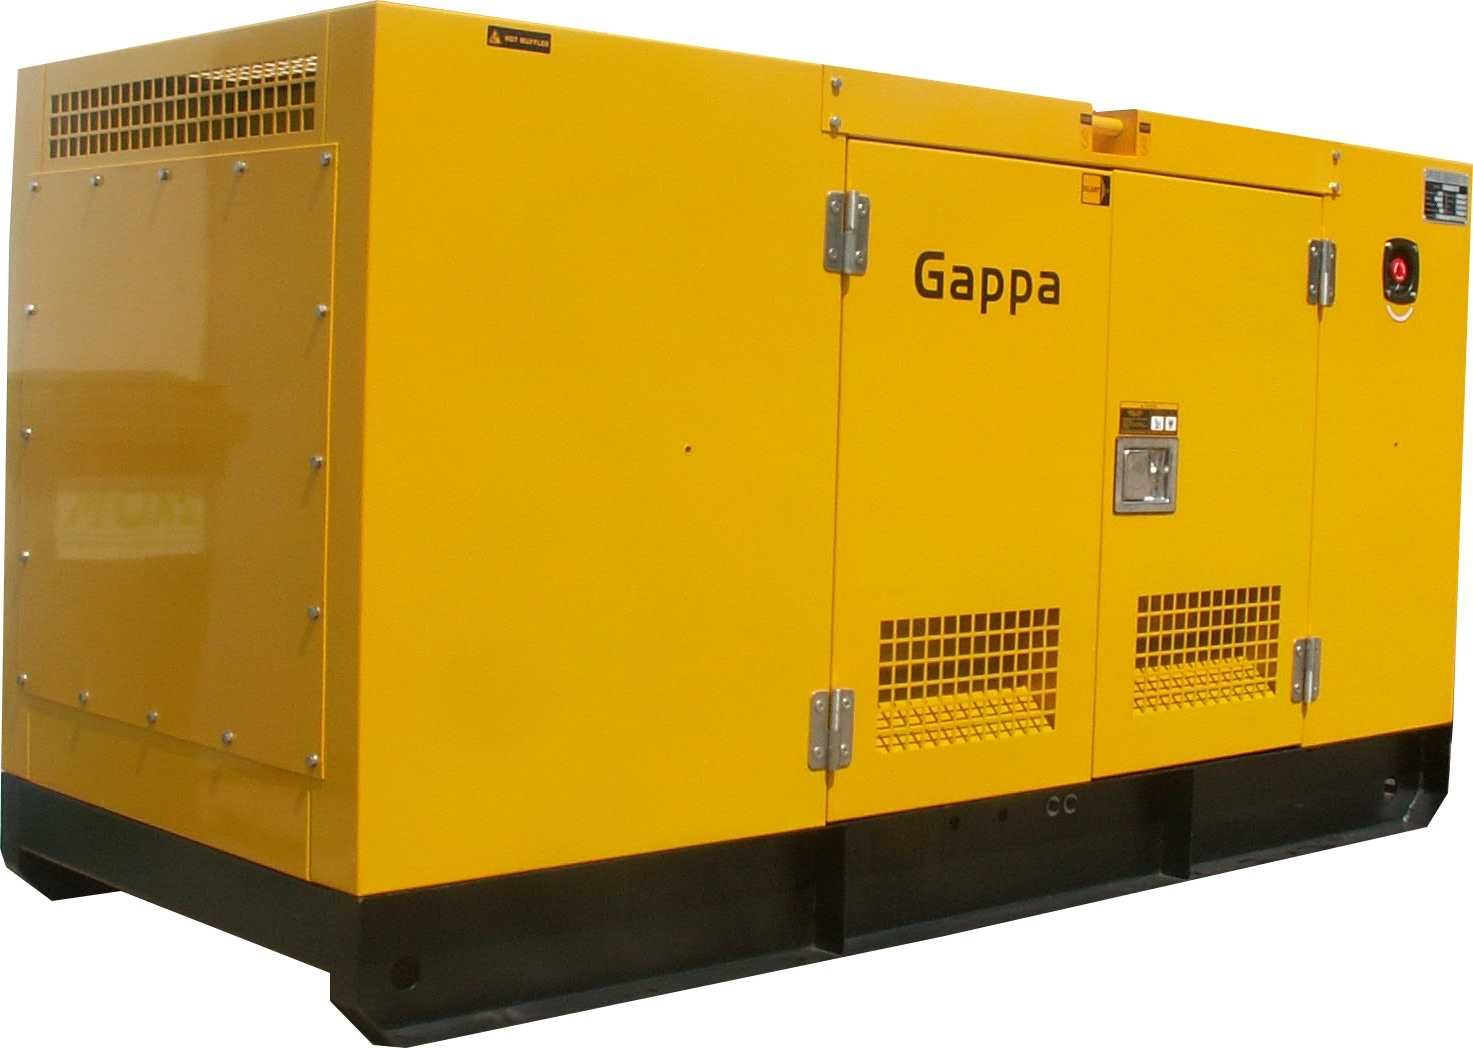 Fabrycznie nowy agregat prądotwórczy marki GAPPA 200 kW